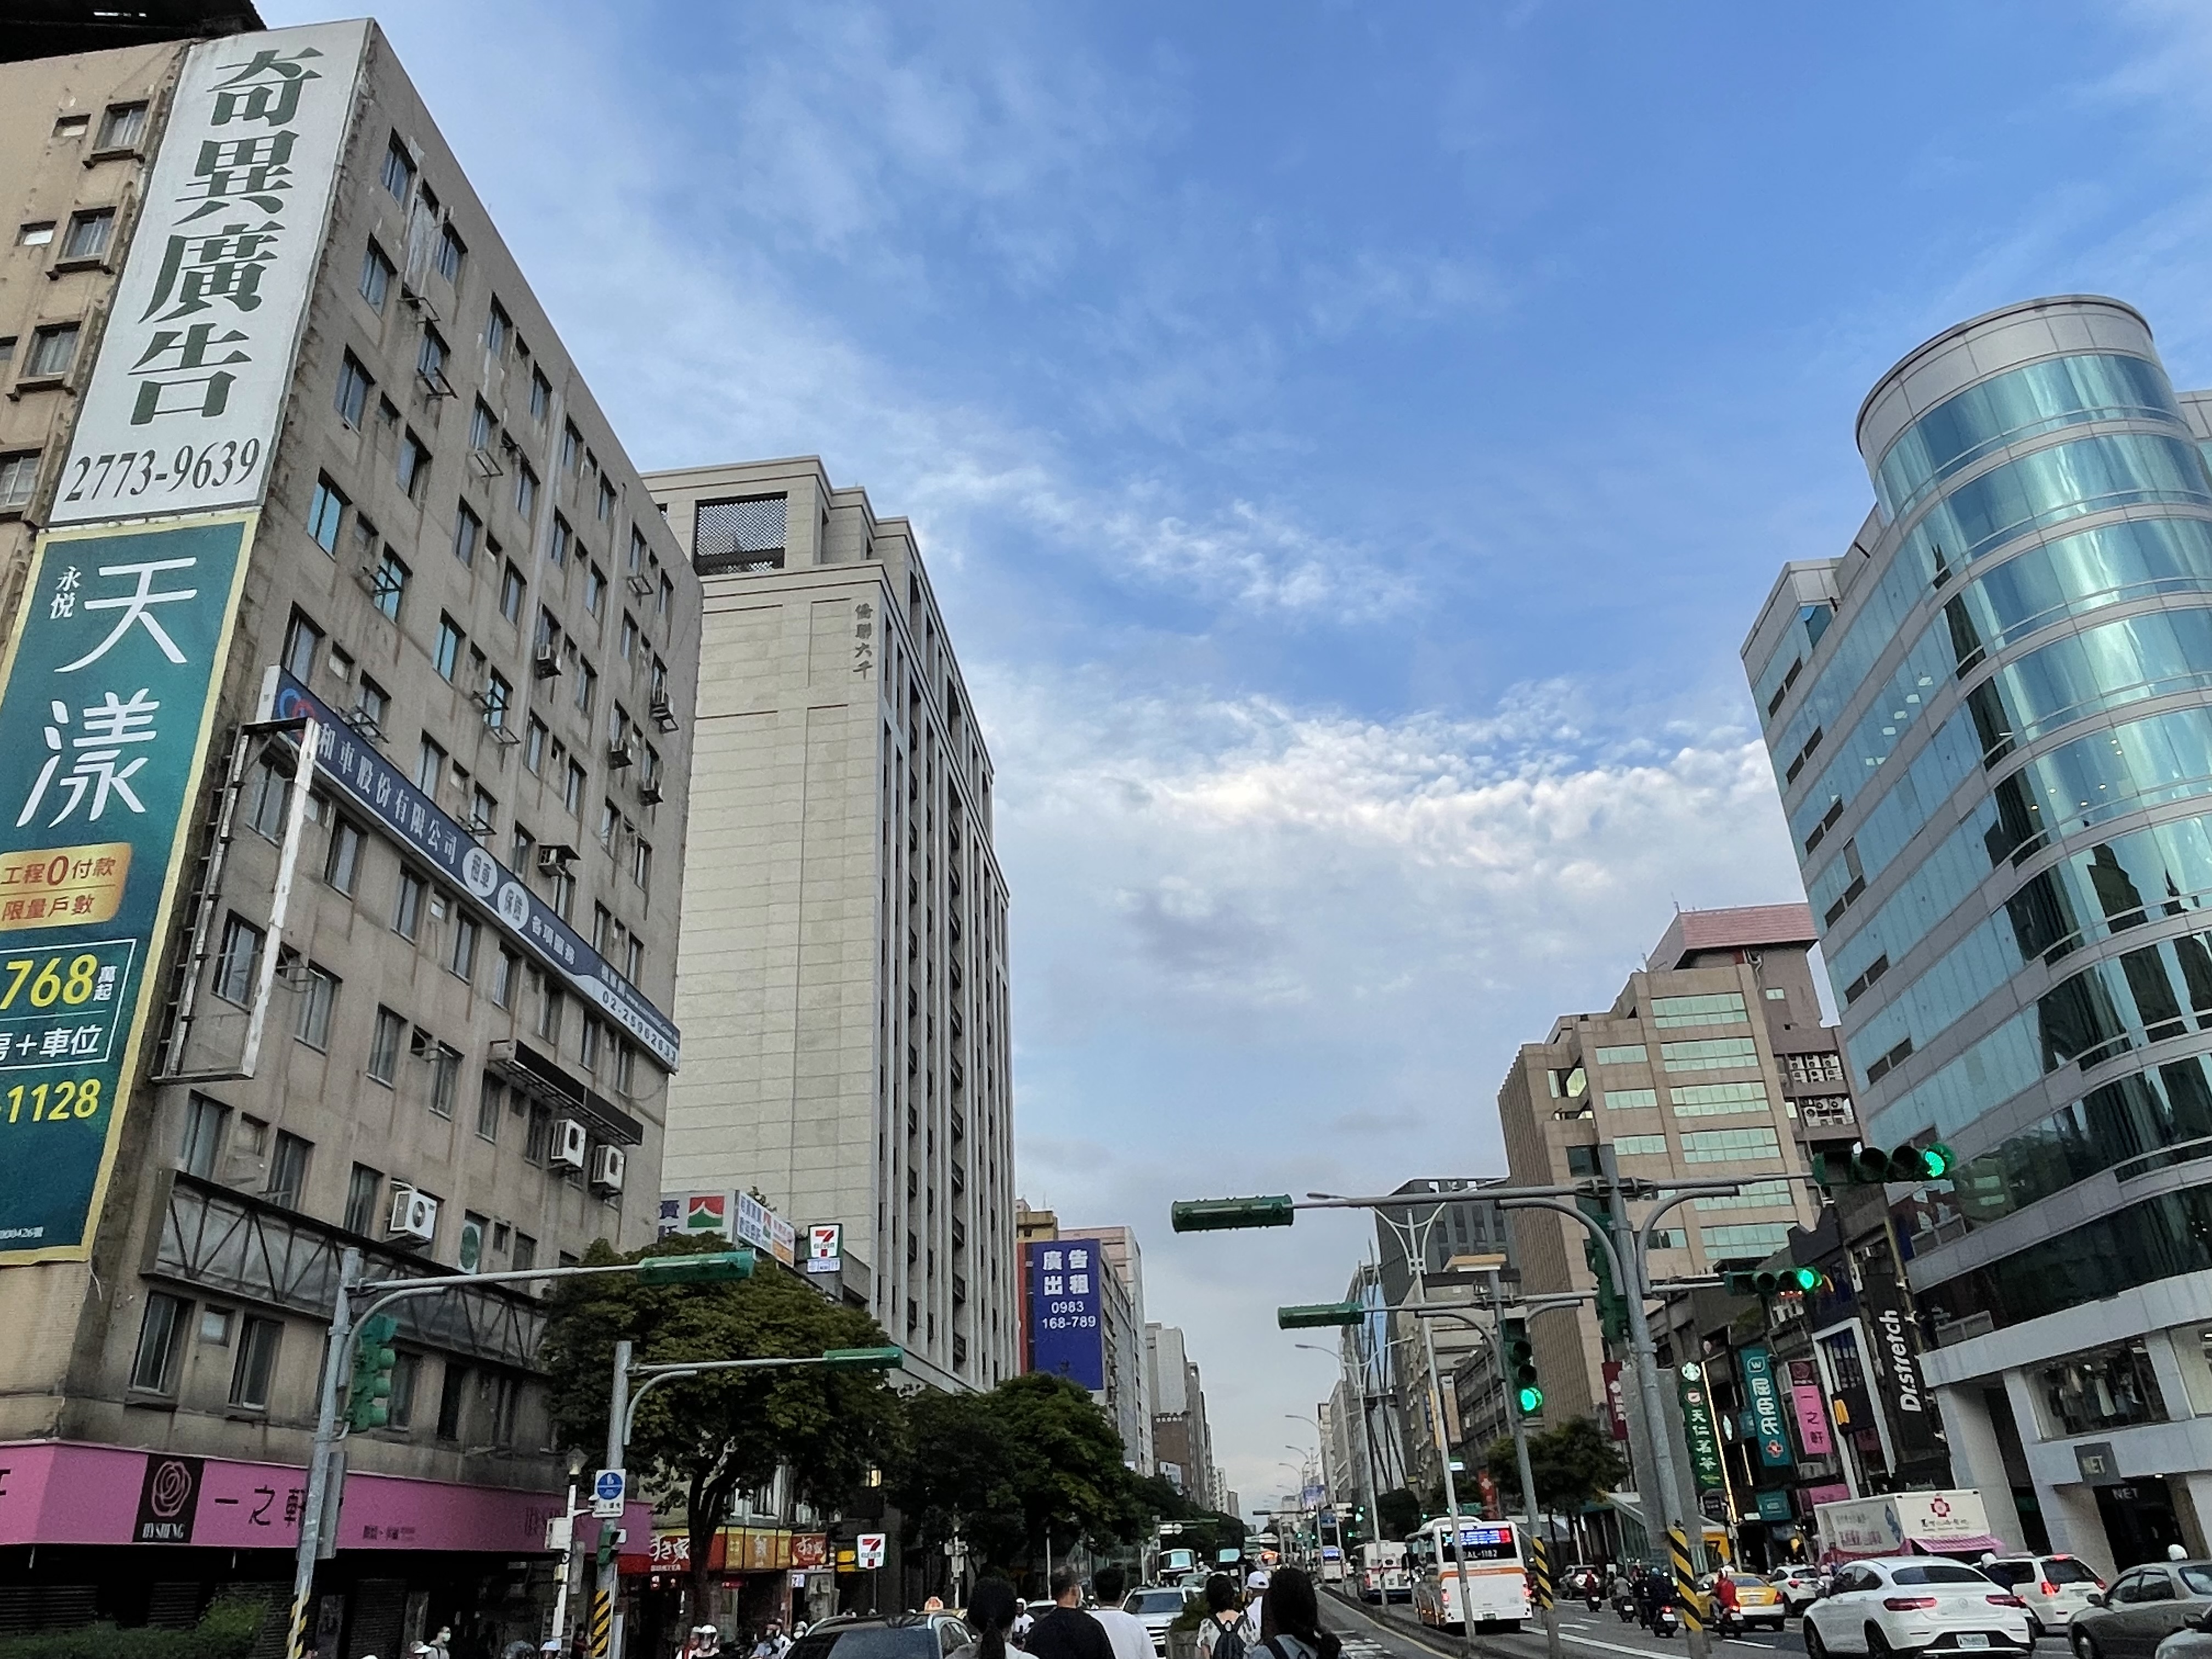 最新实价登录网揭露，台北市中山区吉林路屋龄22年的整栋华厦，今年2月以总价12.8亿元卖出。图为台北市中山区商办街景示意照。台湾房屋提供